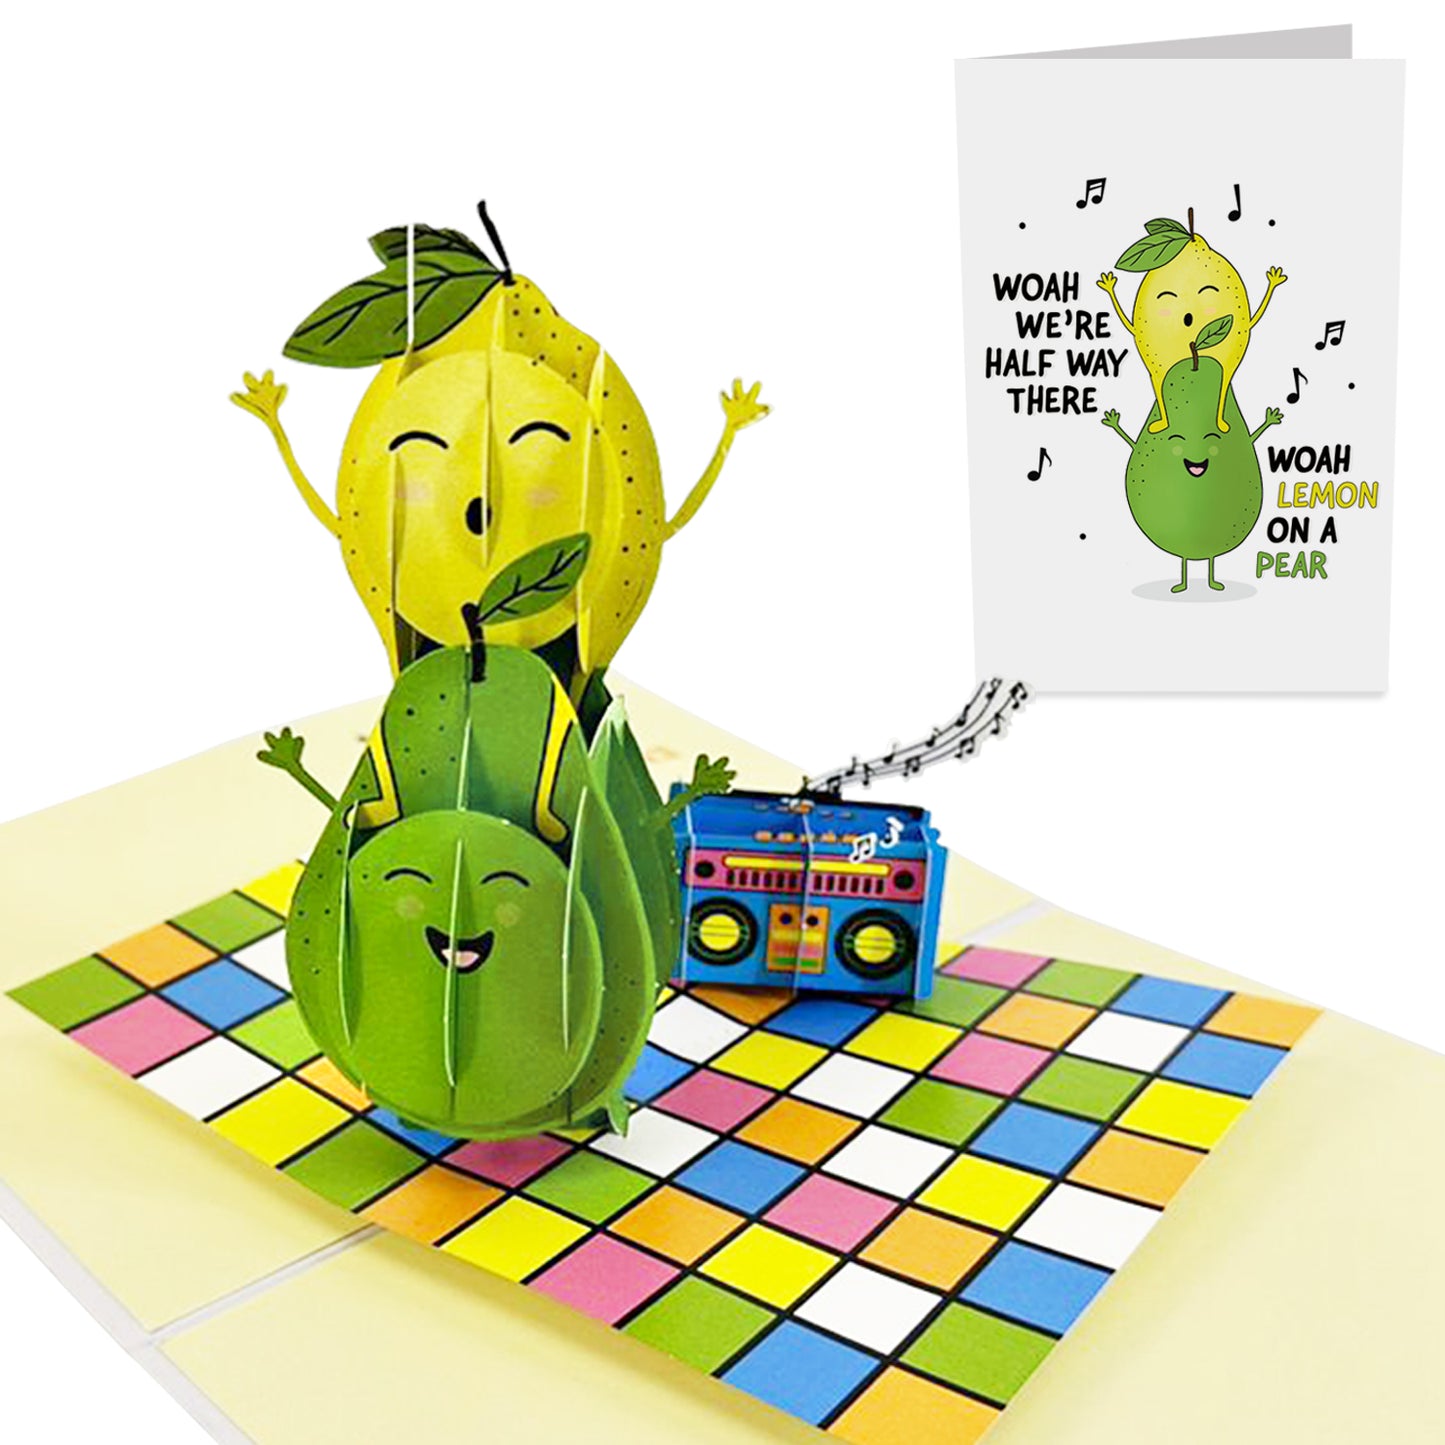 Cute Funny Pop Up Card - Lemon on a Pear - Pear - Lemon - Pun - For Men Women Boys Girls Him Her